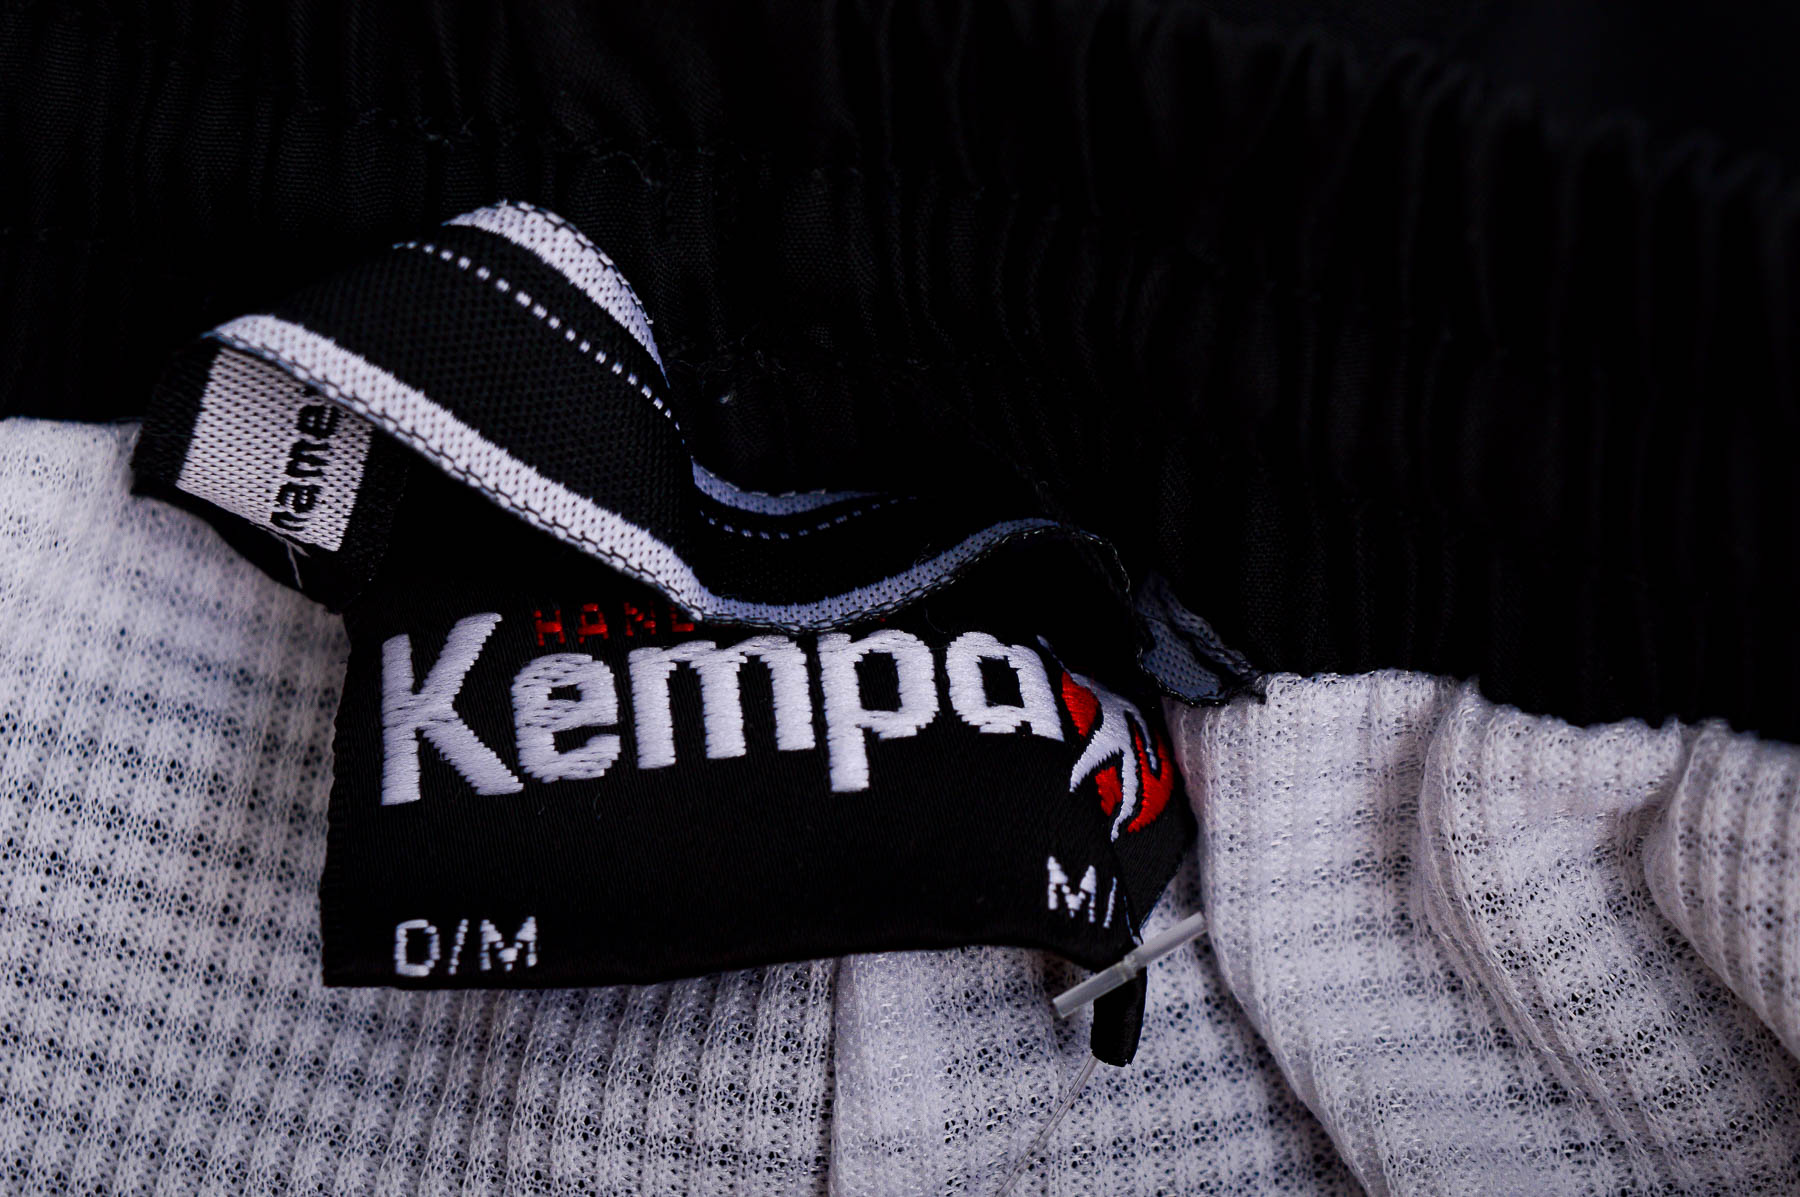 Male sports wear - Kempa - 2